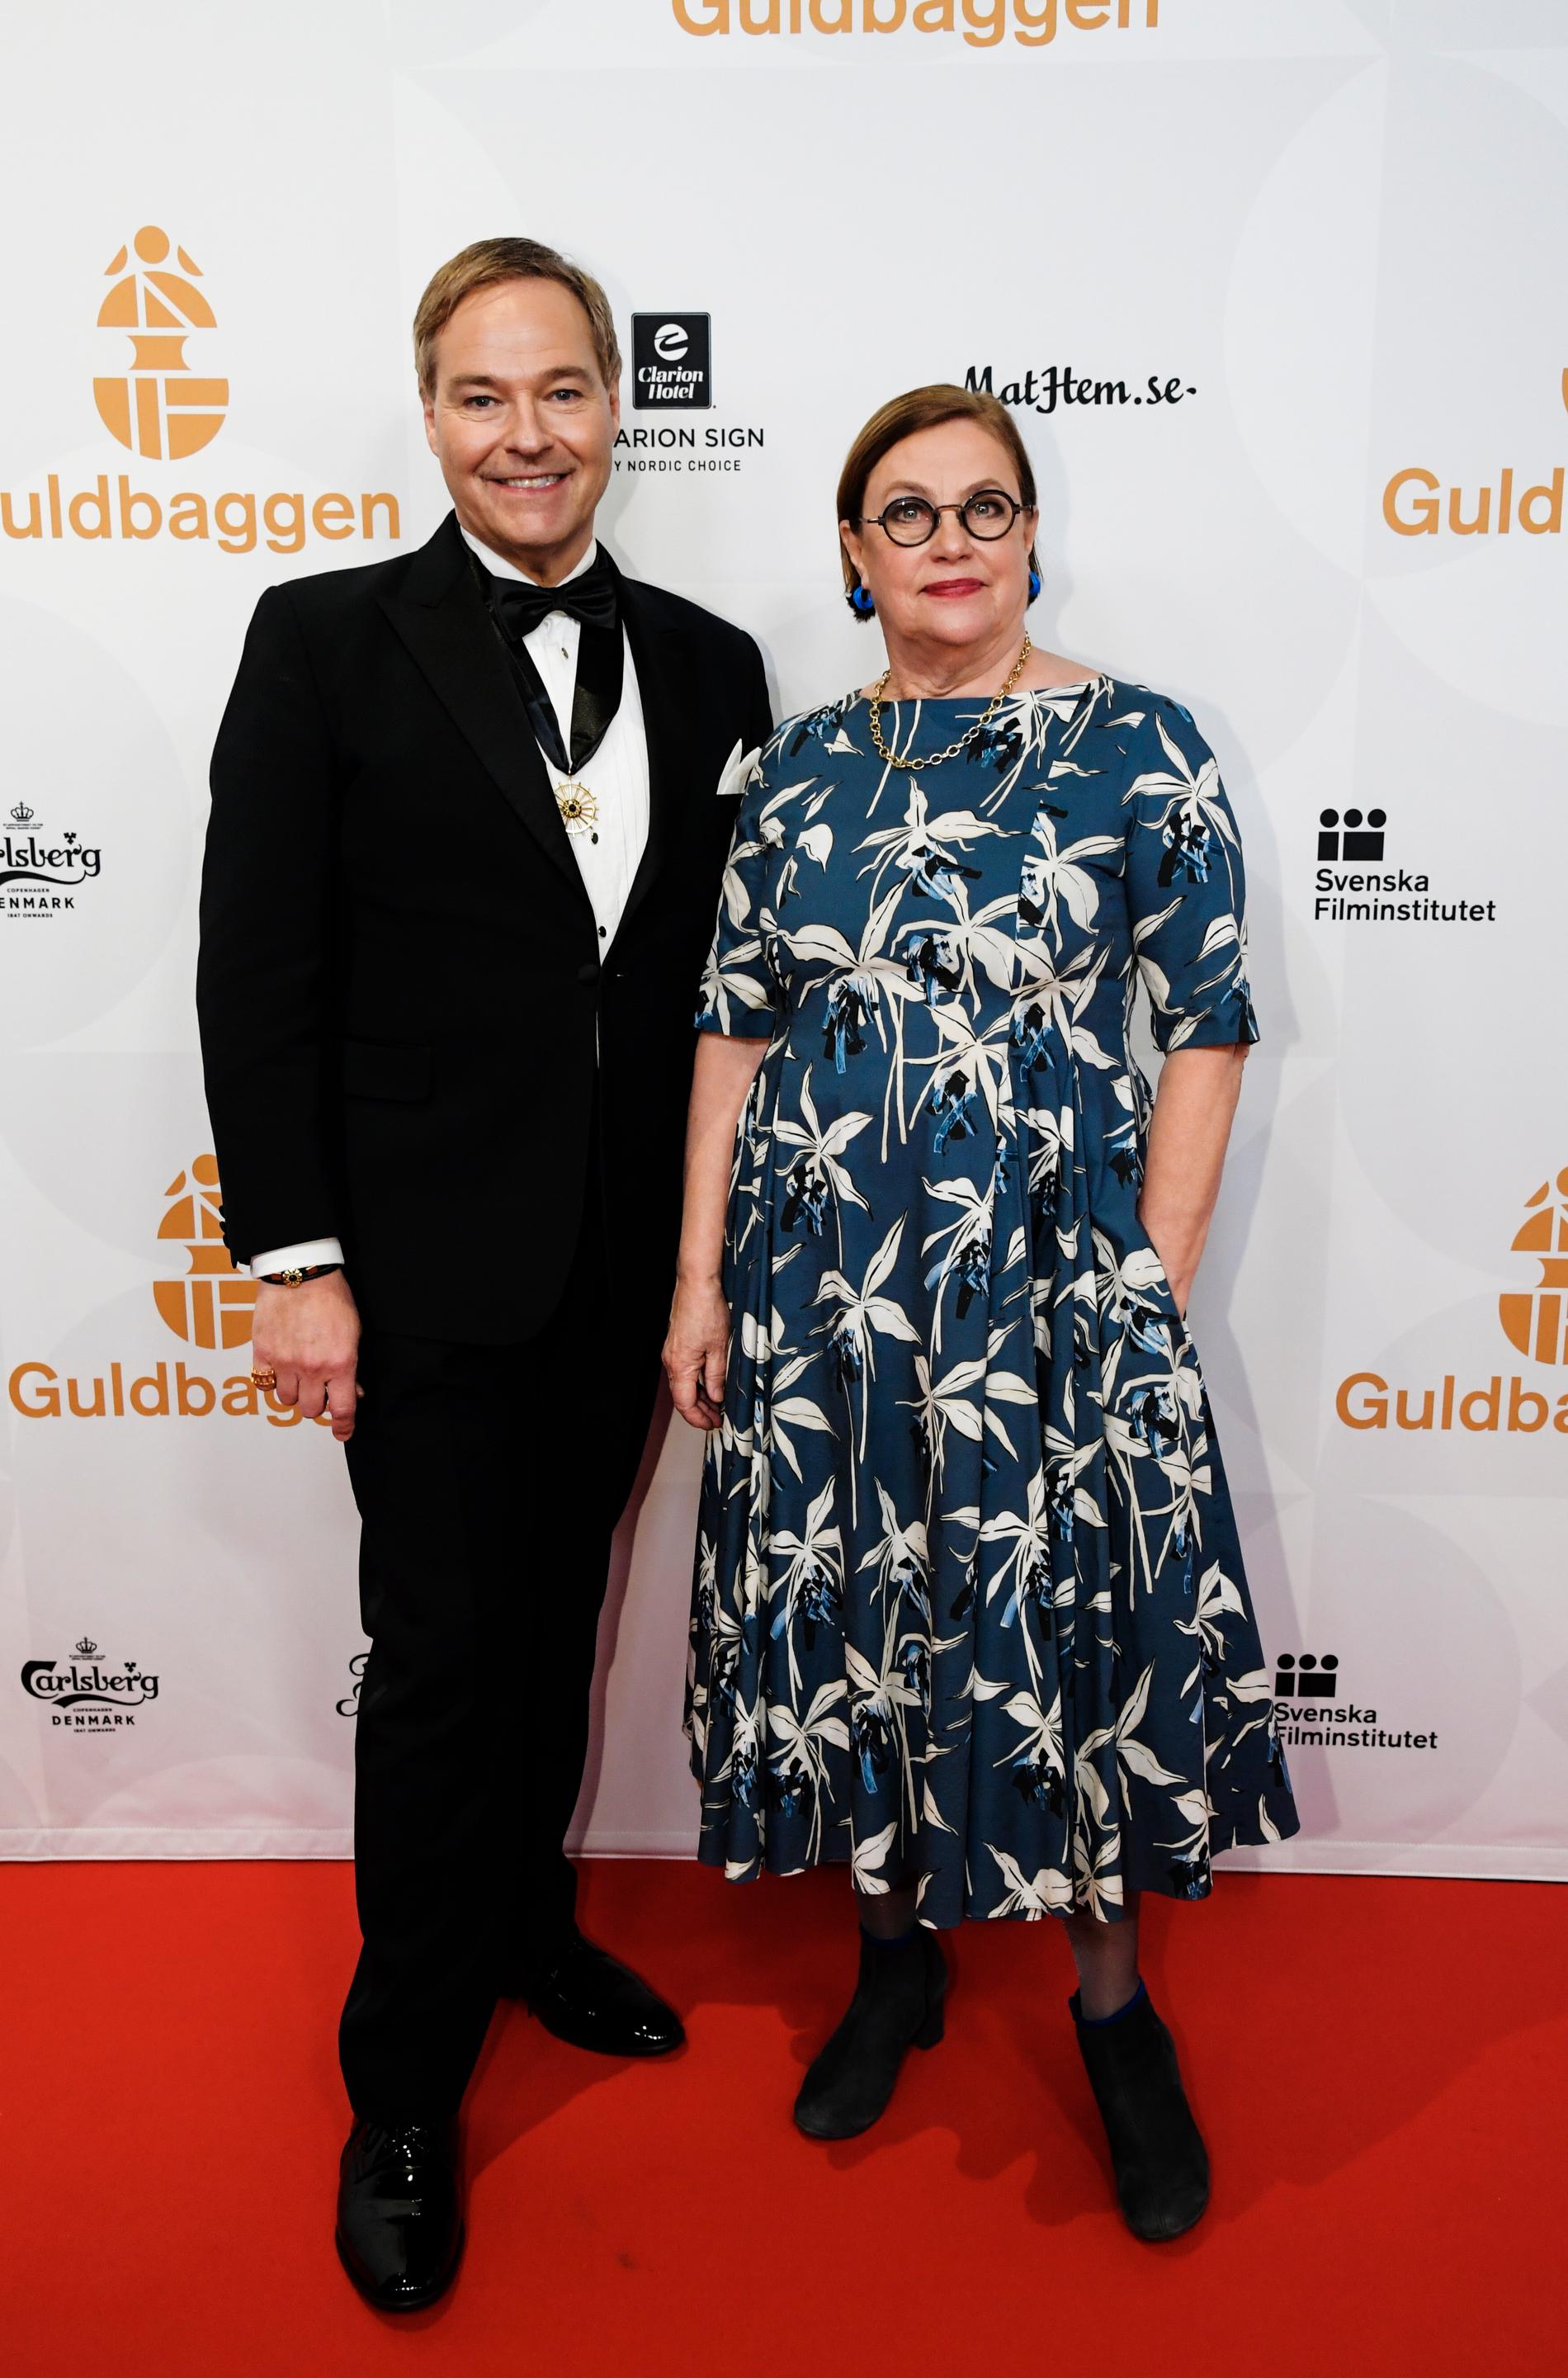 Svenska Filminstitutets presschef Jan Göransson med sällskap anländer till Guldbaggegalan 2019.